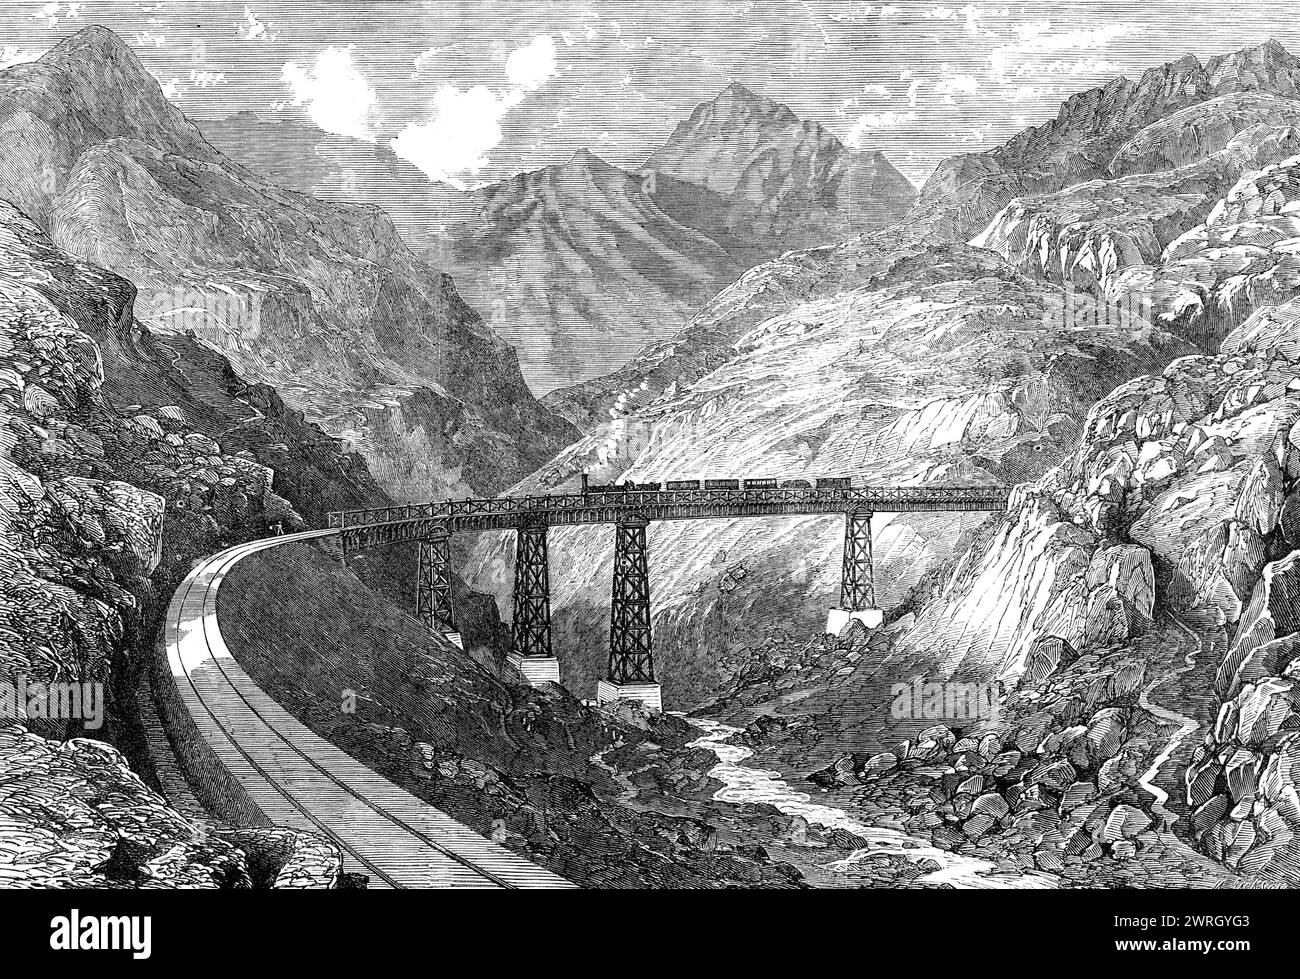 Die Valparaiso- und Santiago-Bahn: Das Maquis-Viadukt, 1864. Stich aus einer Zeichnung von Mr. Boulet von einer der höchsten Eisenbahnen der Welt... Seine Länge beträgt etwas mehr als 114 Meilen, und da sein Verlauf durch einen Teil der Andenkette verläuft, bietet er in mancher Hinsicht Merkmale, die selten bei Werken dieser Art zu finden sind... an einem Punkt tritt die Maquis-Viadukt auf, eine eiserne Struktur 126 ft. In Höhe von 600 m In der Länge, und die die seltenen Merkmale zeigt, dass sie zu einem Radius von 600 ft. Gekrümmt sind, und, aufgrund der Neigung darüber, etwa 14 ft. Höher bei 1 en Stockfoto